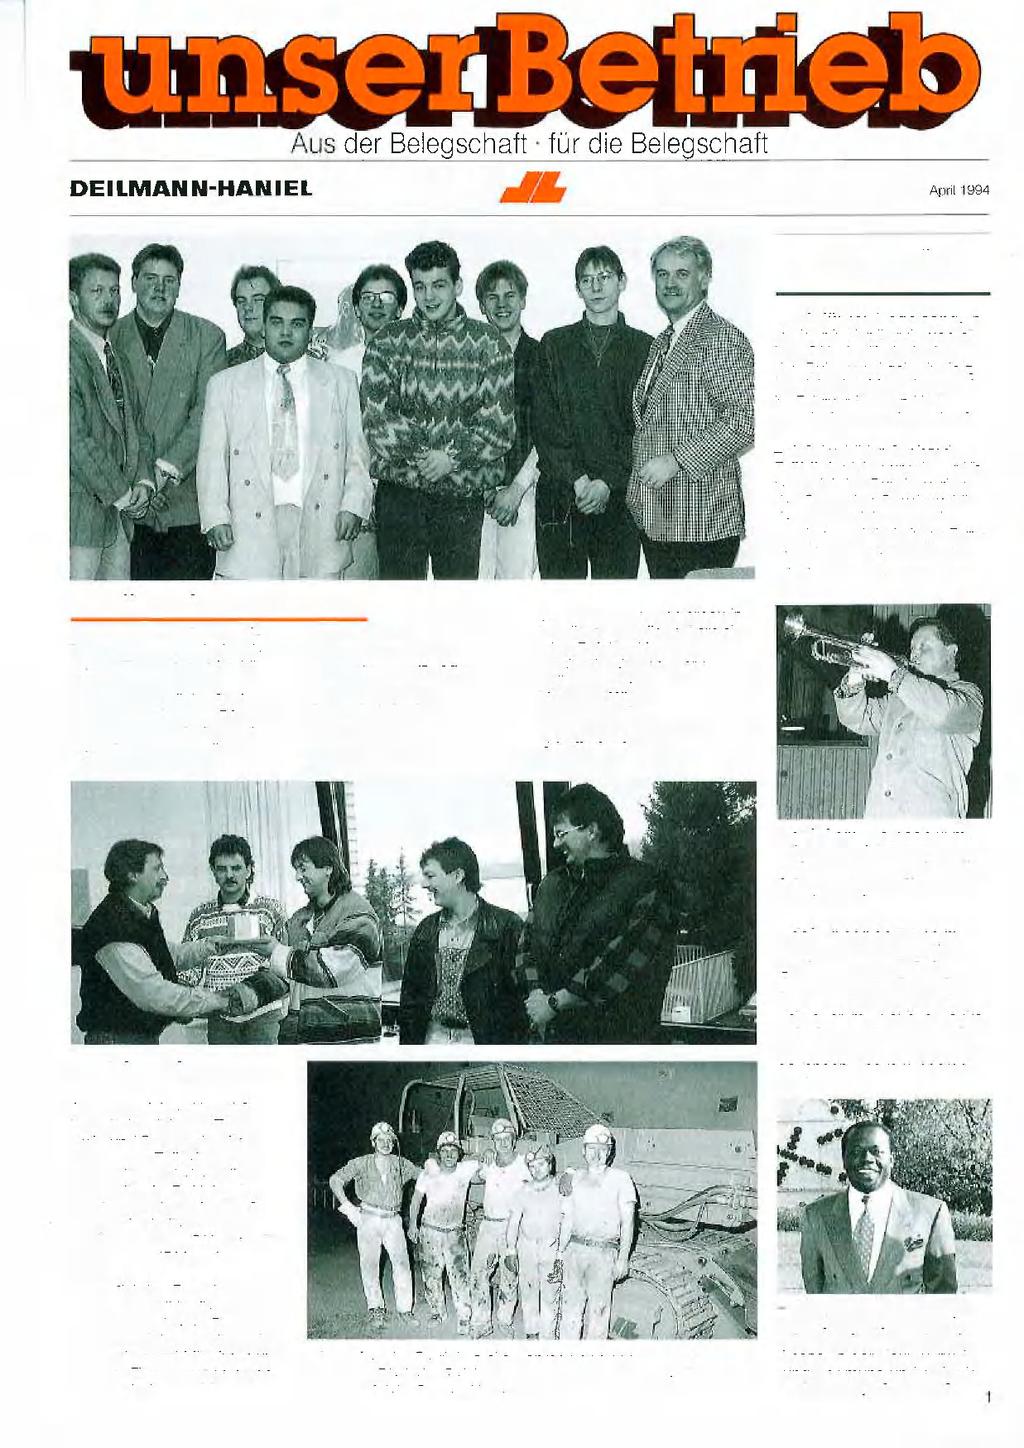 Schon gehört? Lehrlinge freigesprochen Am 31. Januar 1994 wurden 7 frischgebackene Industriemechaniker von der Ausbildung freigesprochen. Das Foto zeigt links Gerhard Fröhlich, rechts Dr.